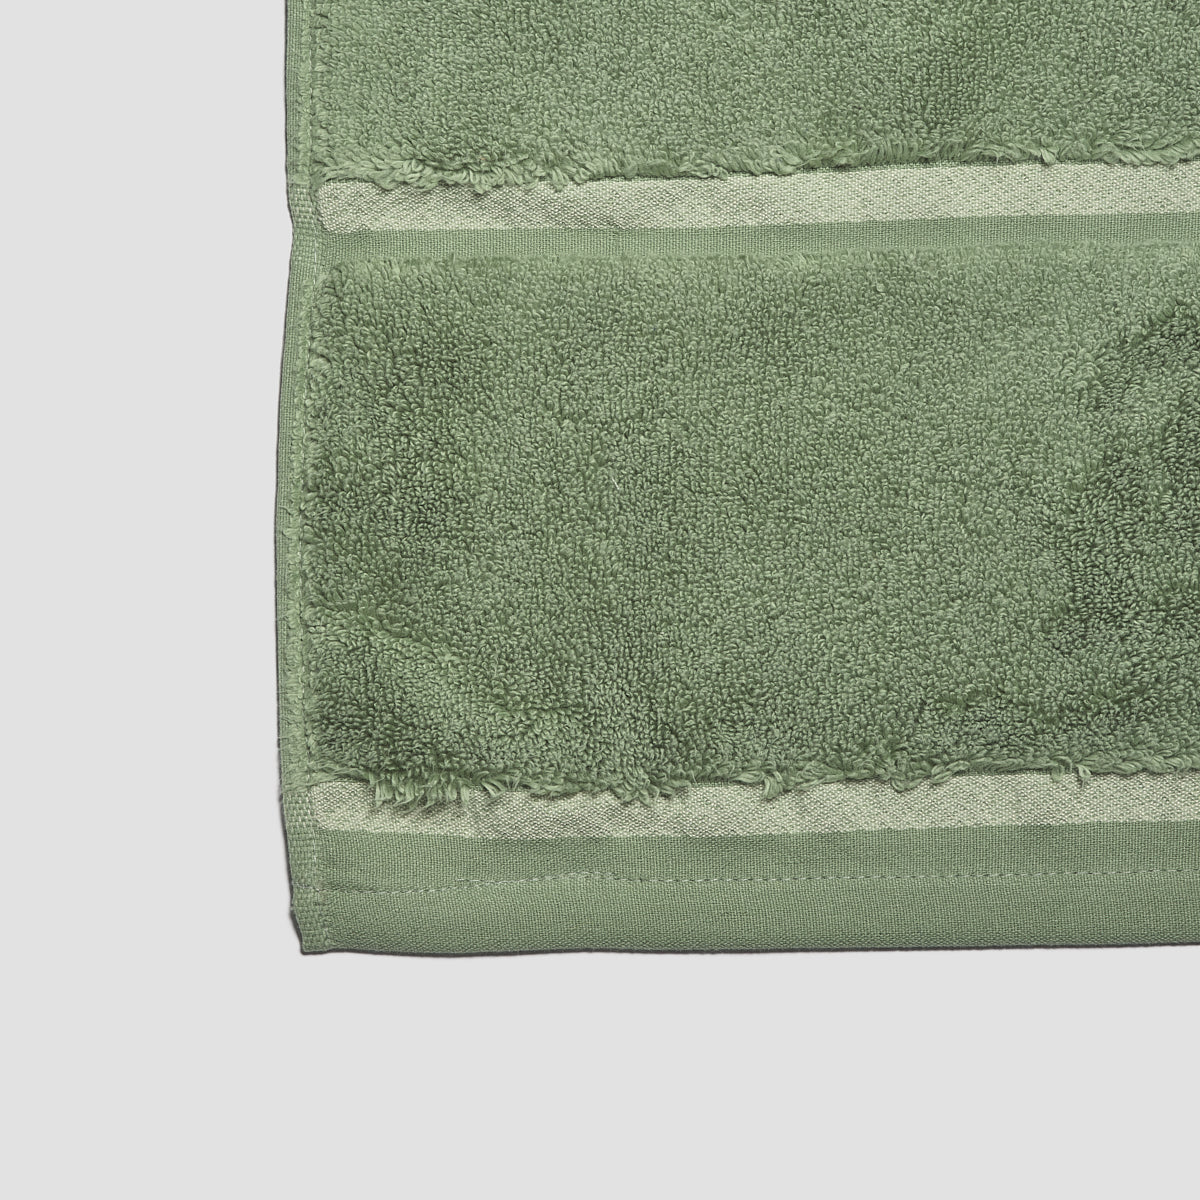 Dark Green Linen Tea Towels. Forest Green Kitchen Towels. Eco-friendly Green  Linen Dish Towels. Medium Weight Natural Linen Kitchen Towels. 